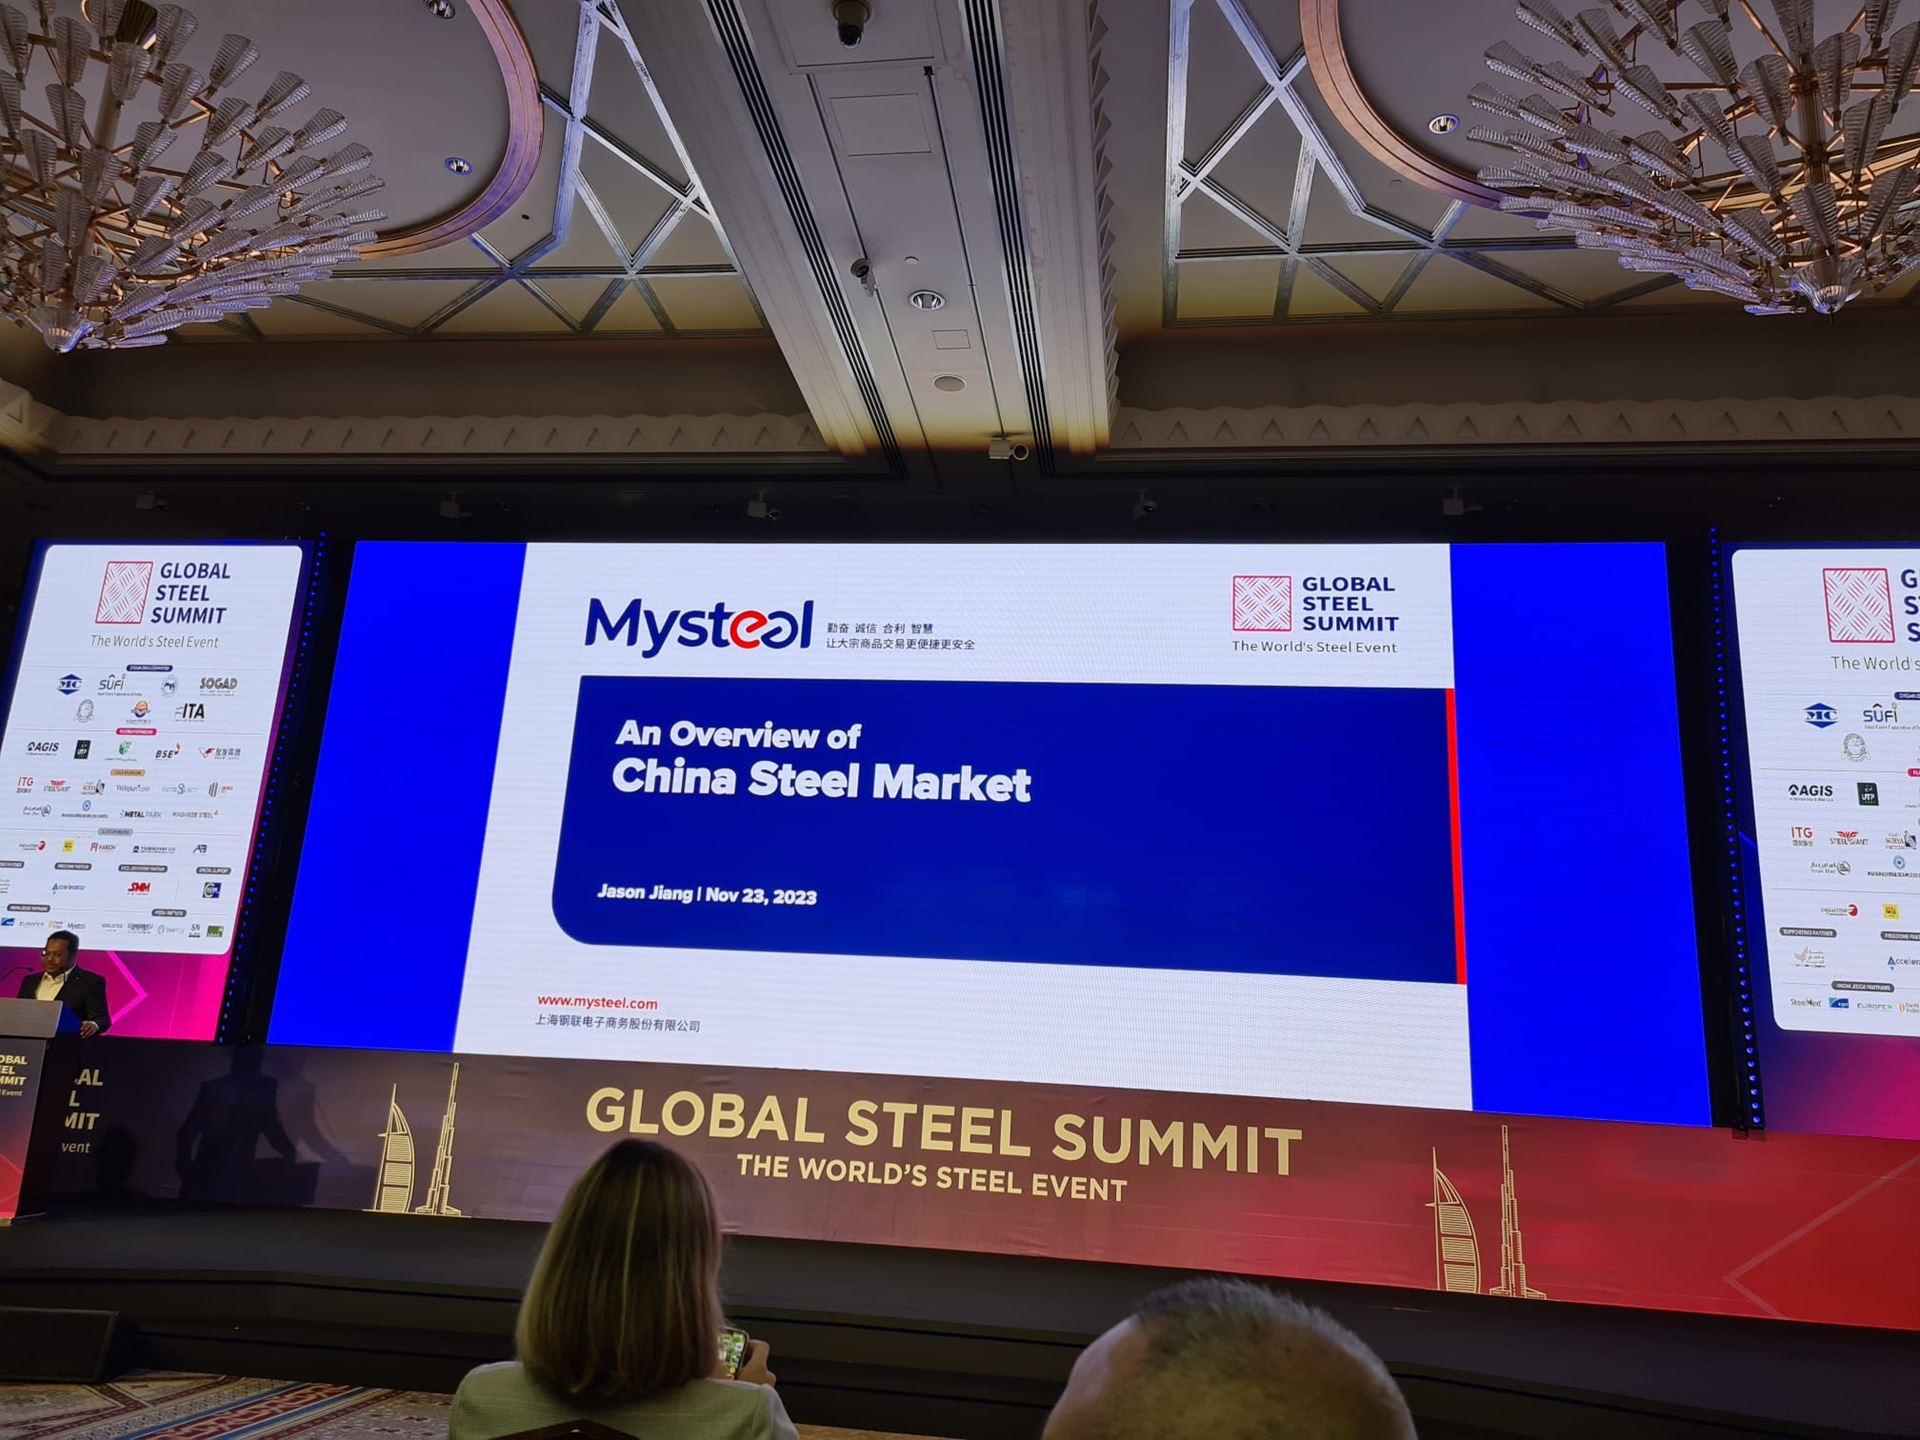 Mysteel Genel Müdürü Jason Jiang, Global Steel Summit'te Çin çelik pazarı hakkında genel bir değerlendirme yaptı